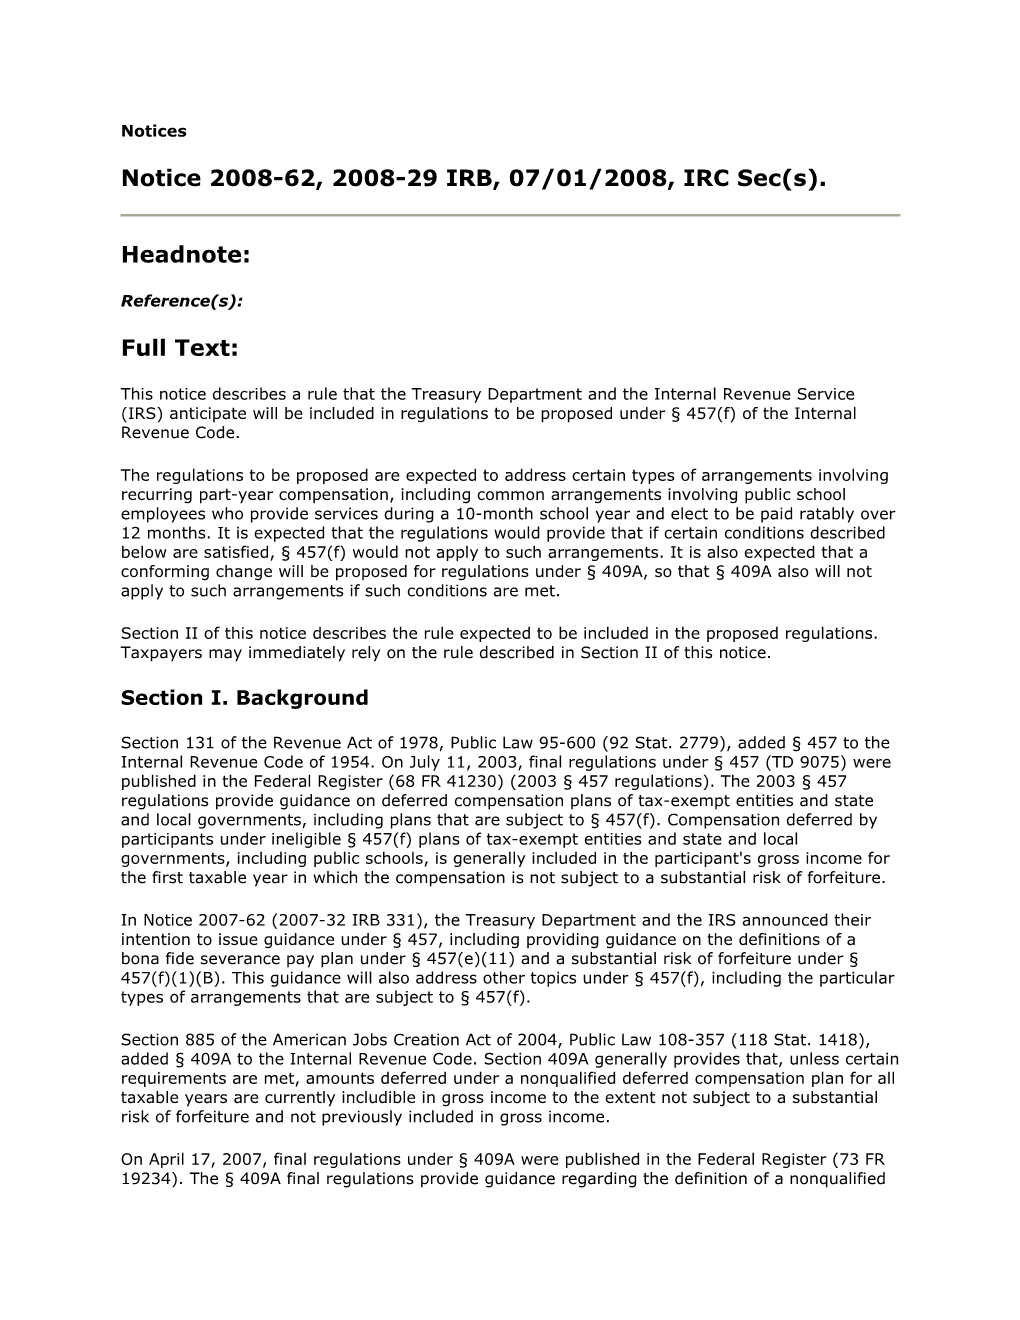 Notice 2008-62, 2008-29 IRB, 07/01/2008, IRC Sec(S)